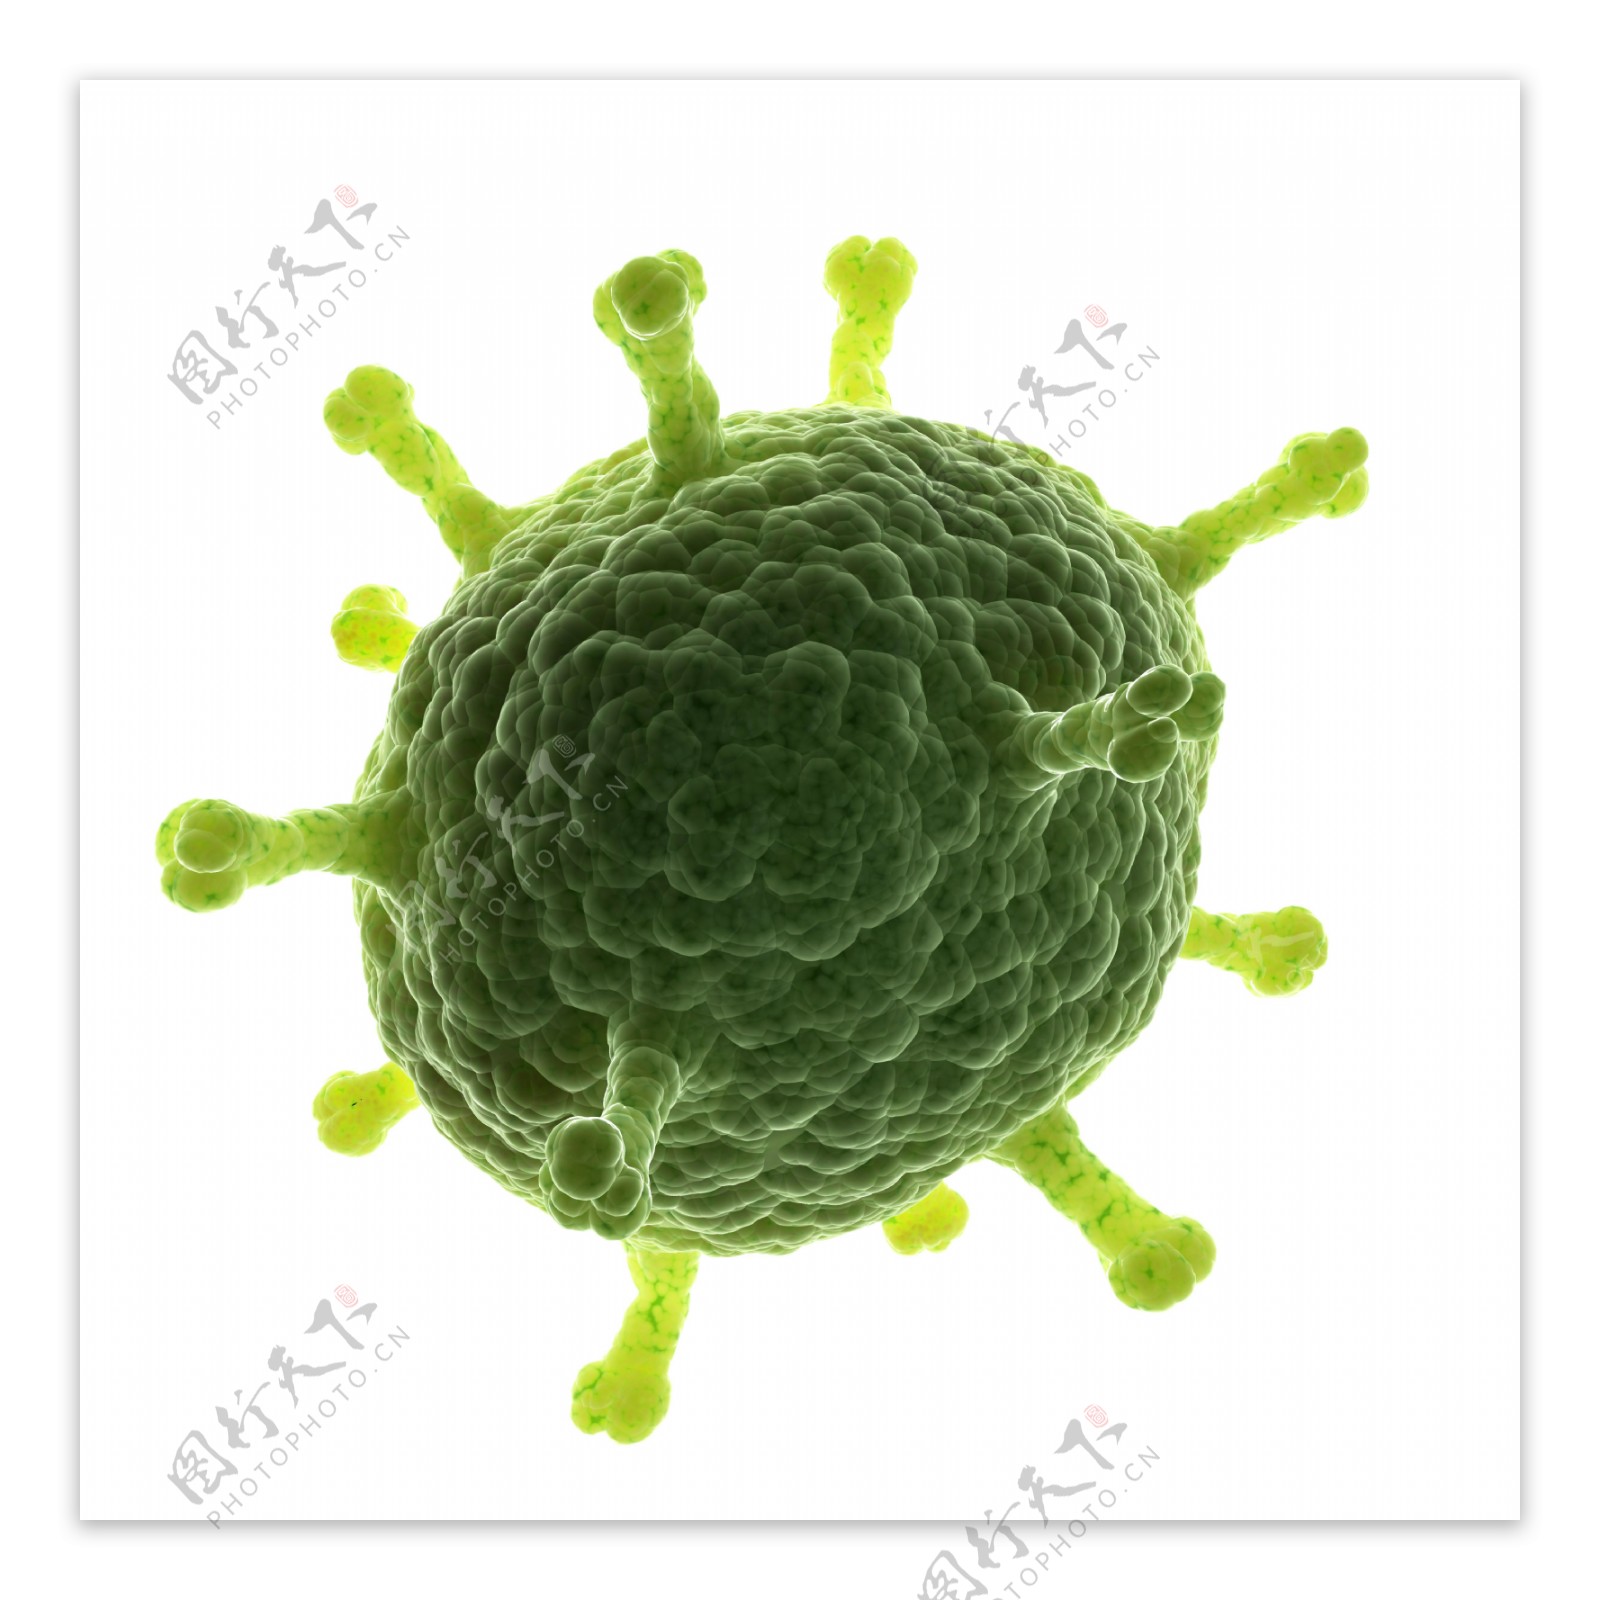 球状生物病毒图片